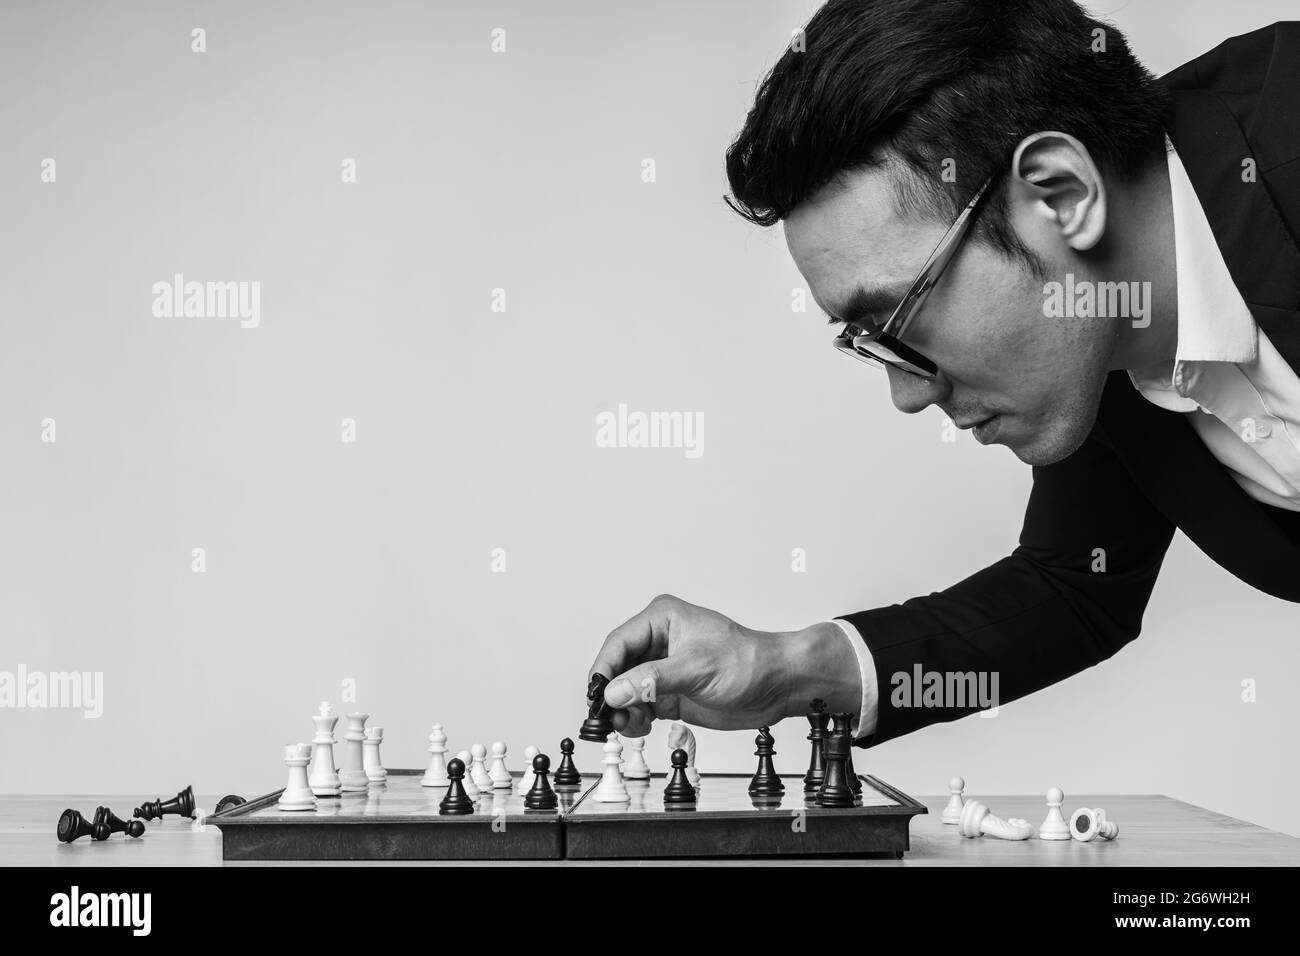 L'homme d'affaires asiatique pense à sa prochaine décision sur le plateau des échecs Banque D'Images